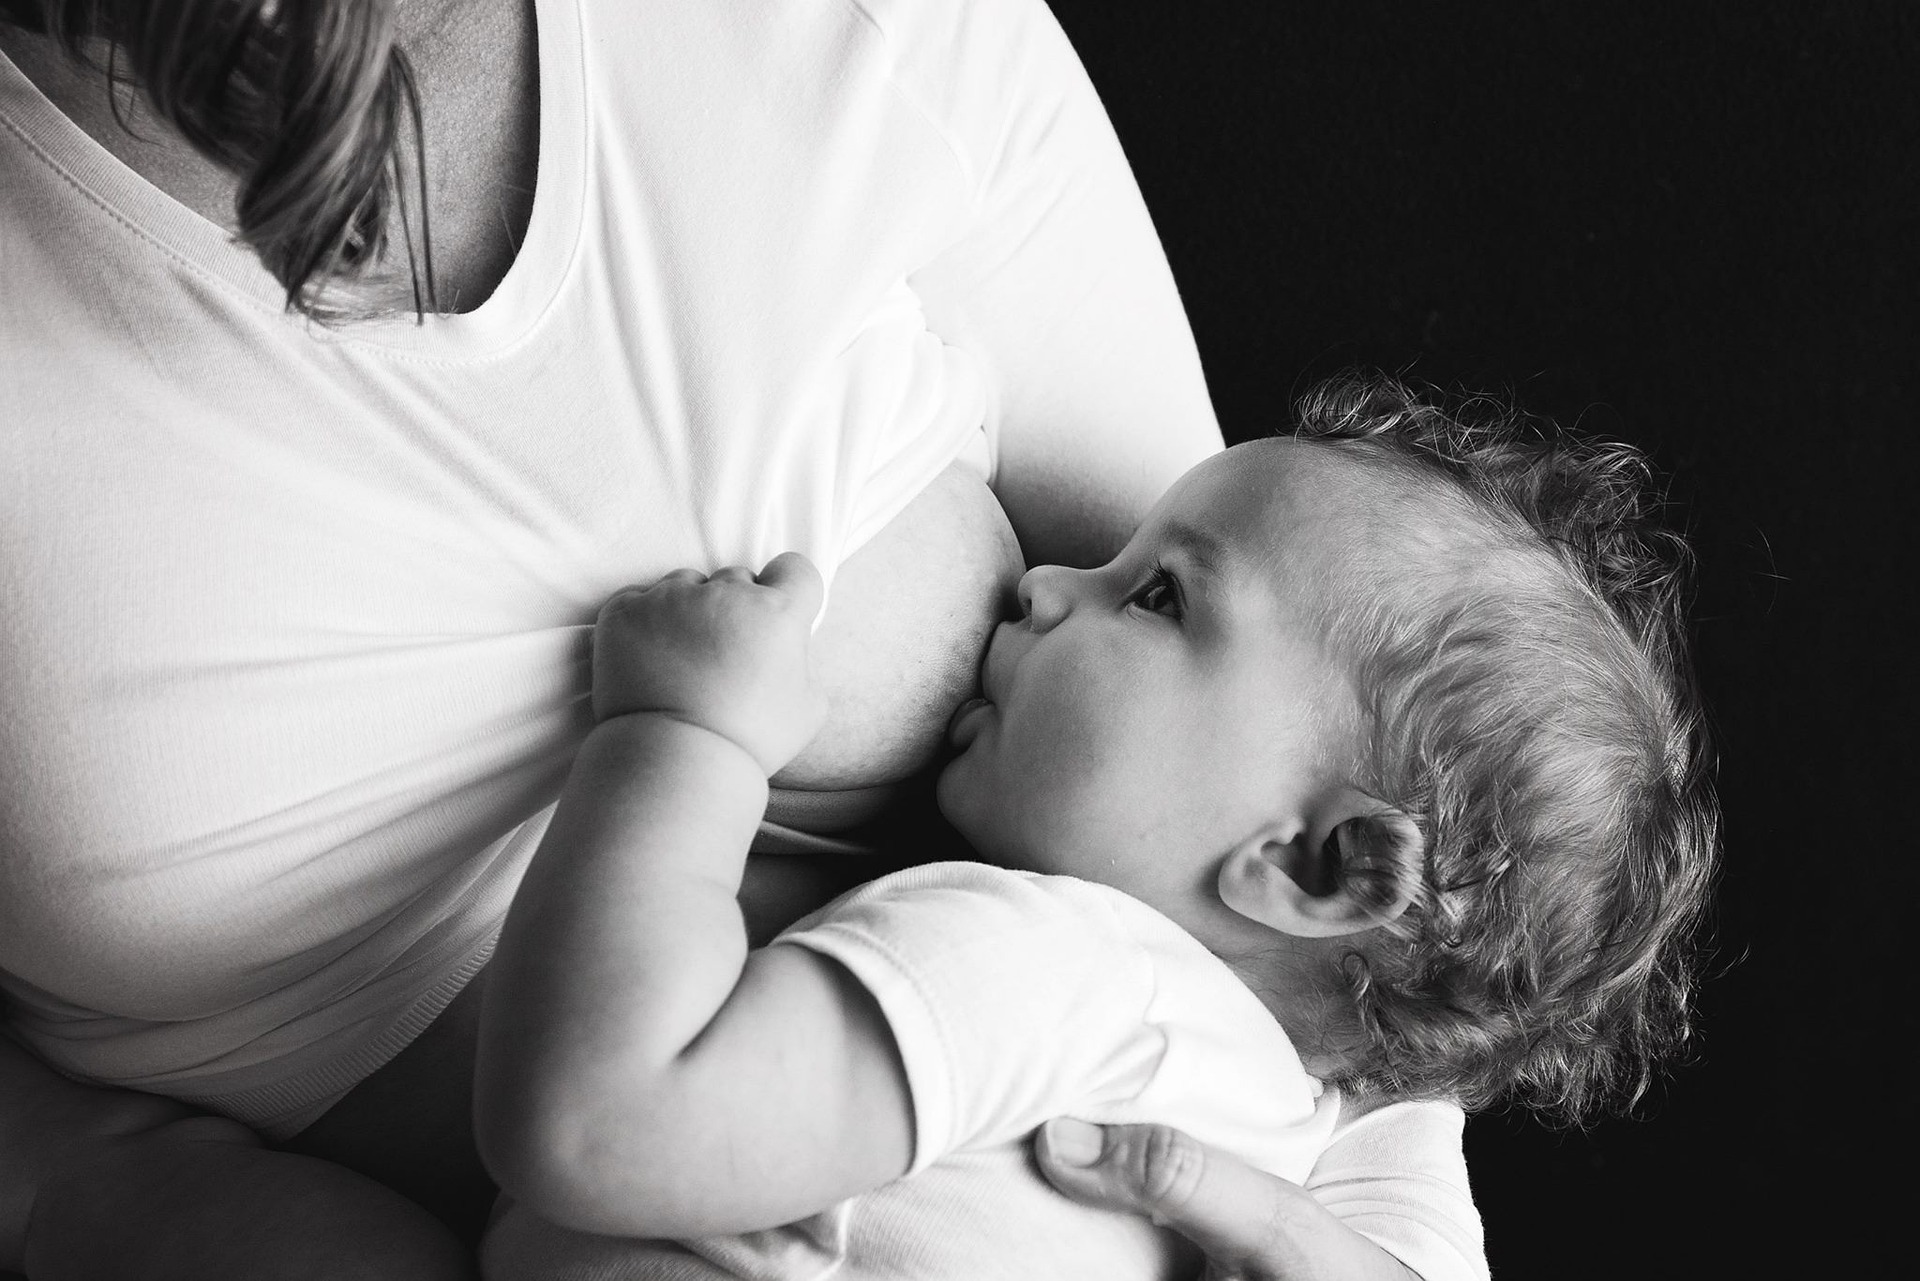 Schoonmoeder eist dat moeder stopt met borstvoeding geven om abnormale reden